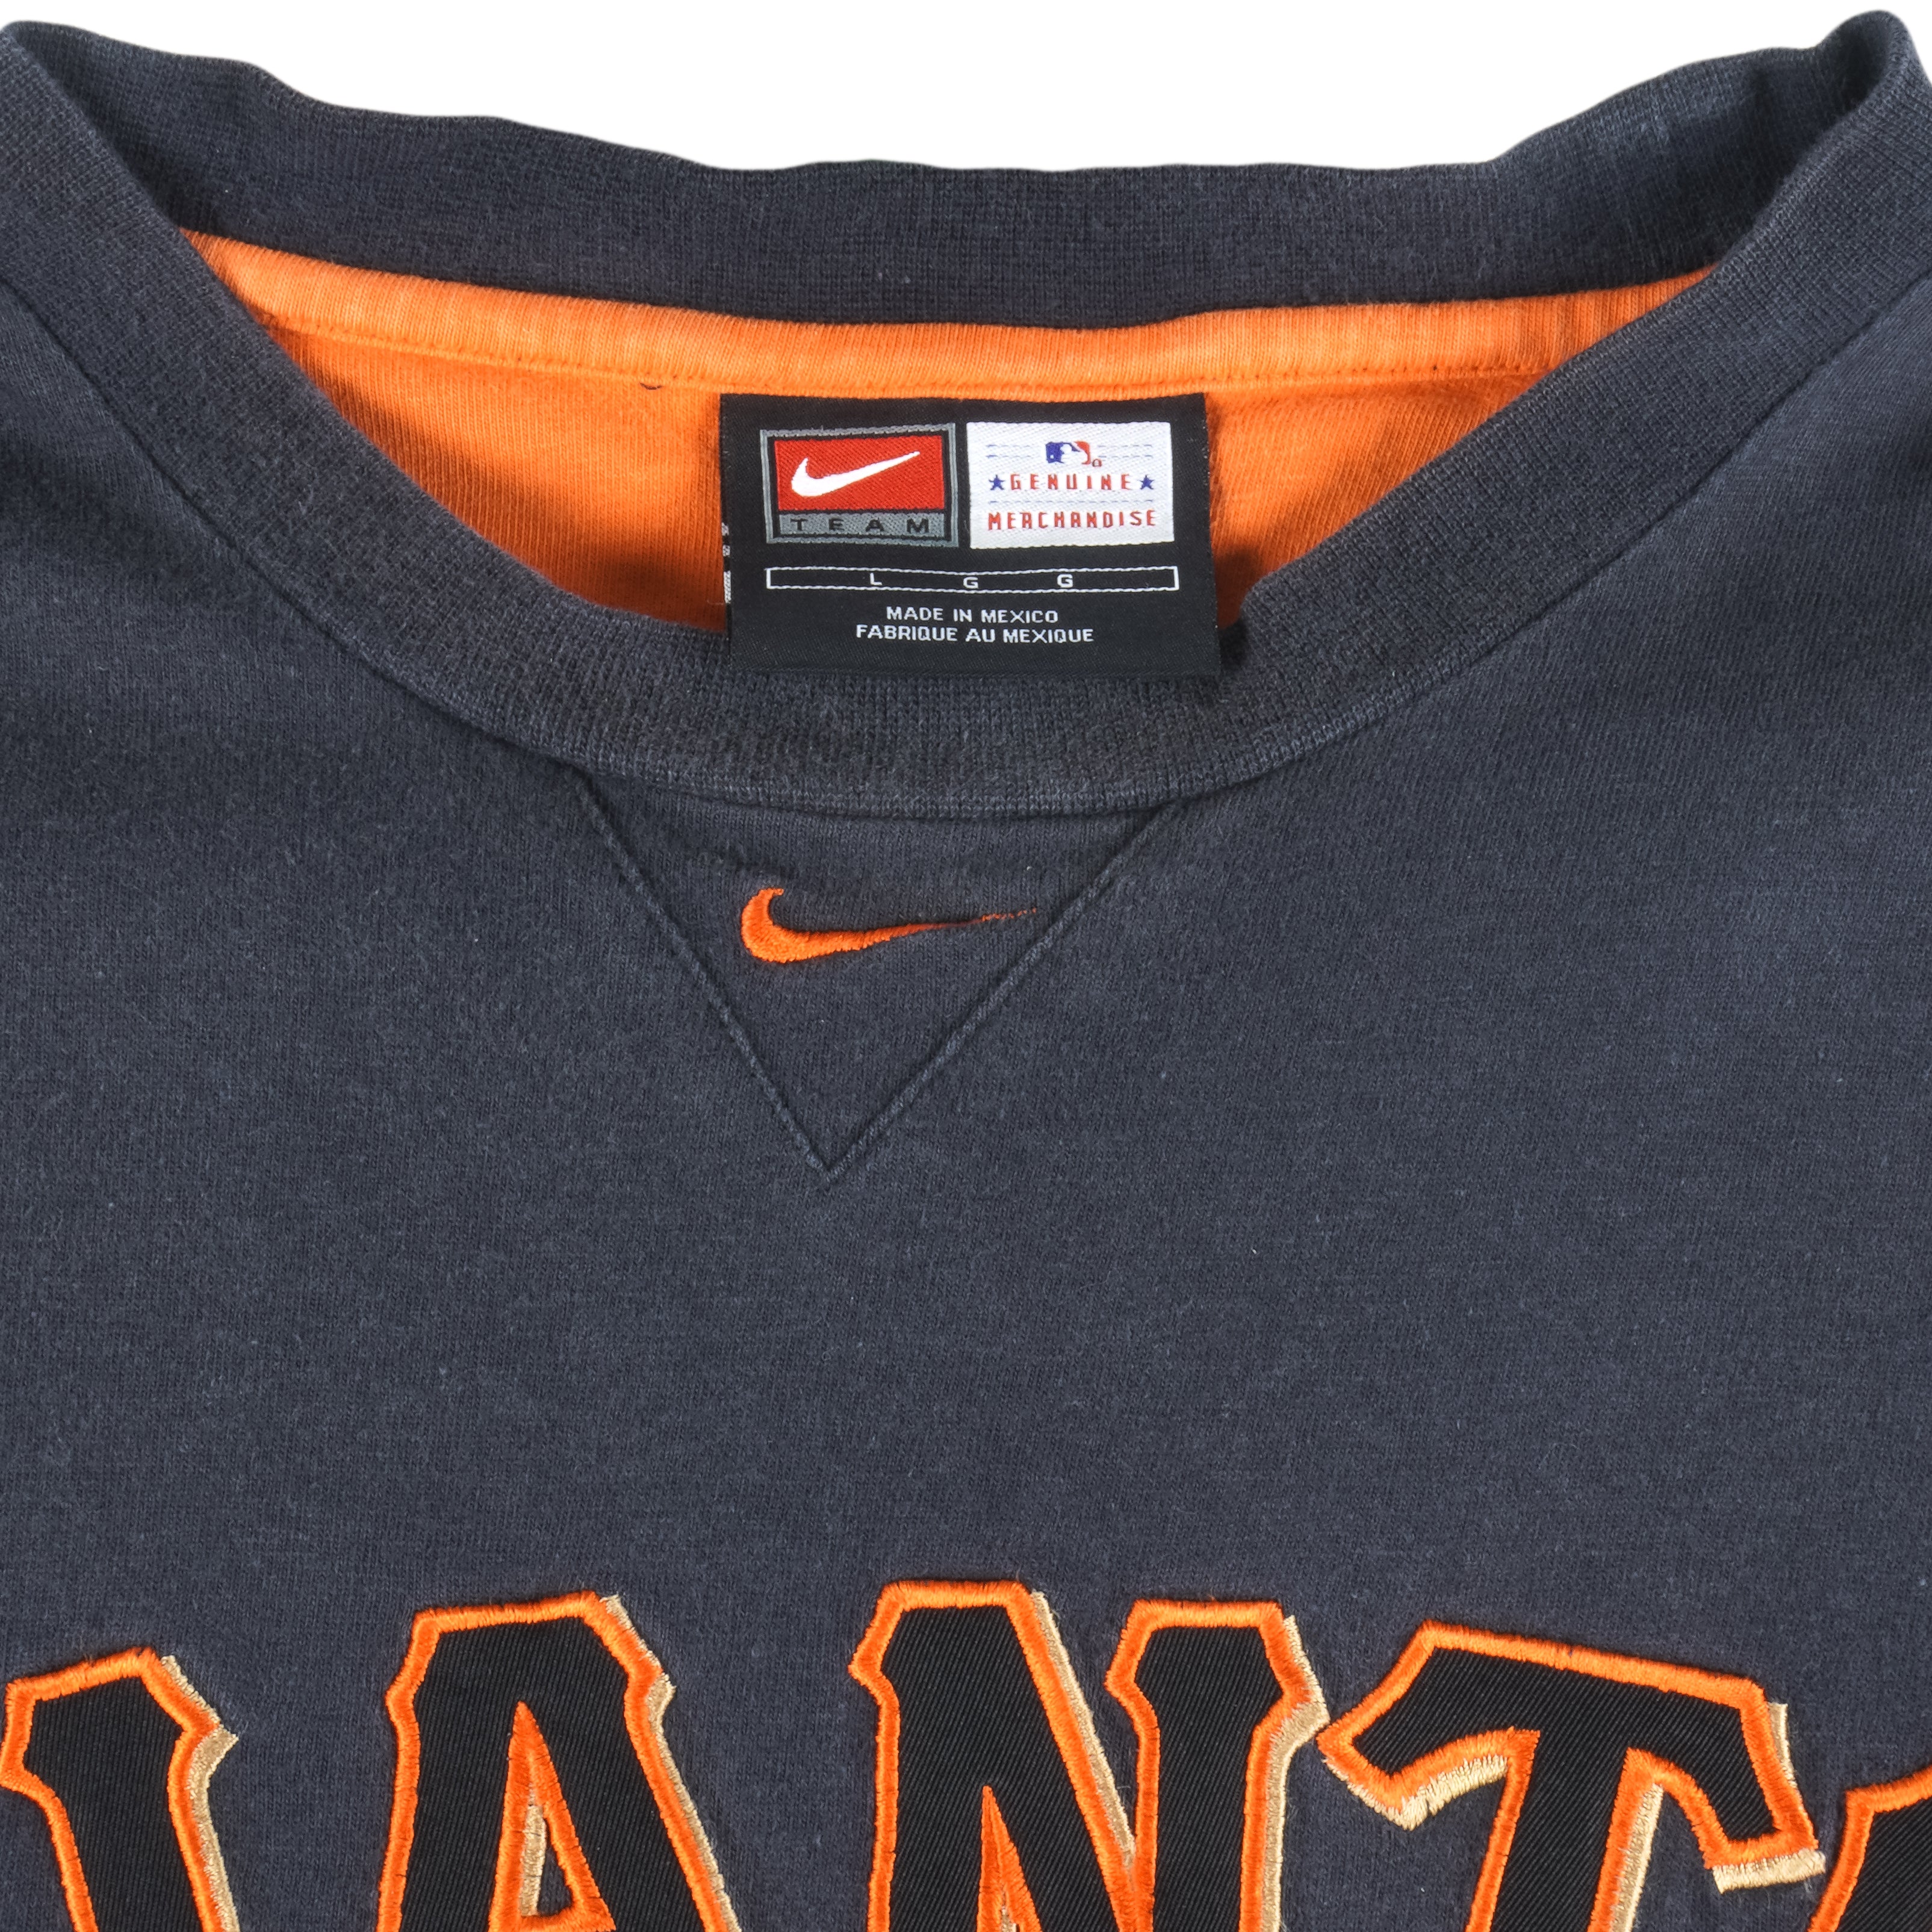 Vintage Team Nike San Francisco Giants Jersey Size Large Pullover V Neck